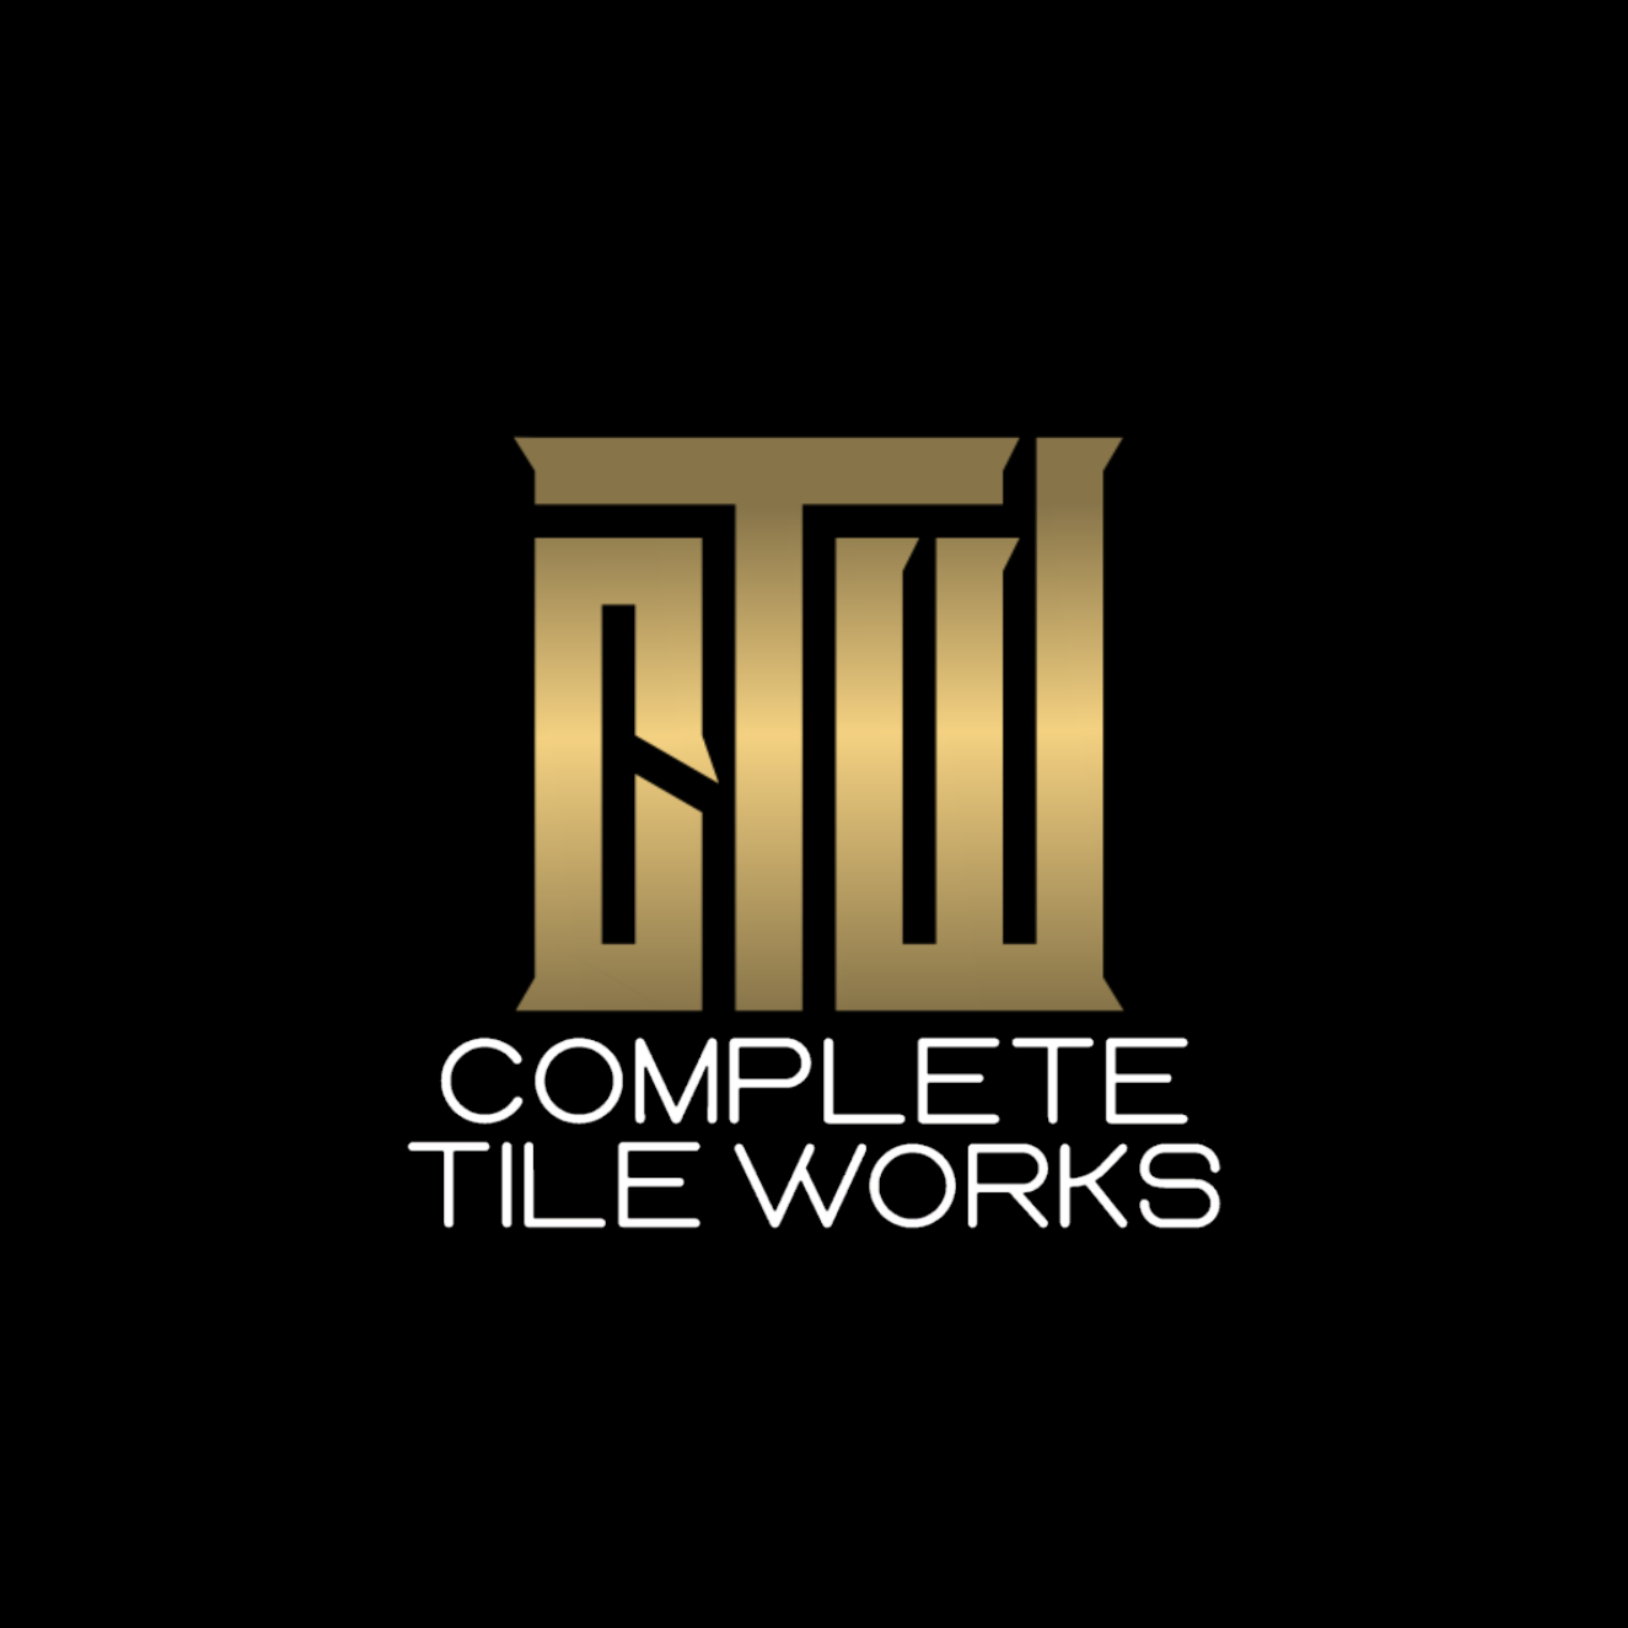 Complete_Tile_works.png